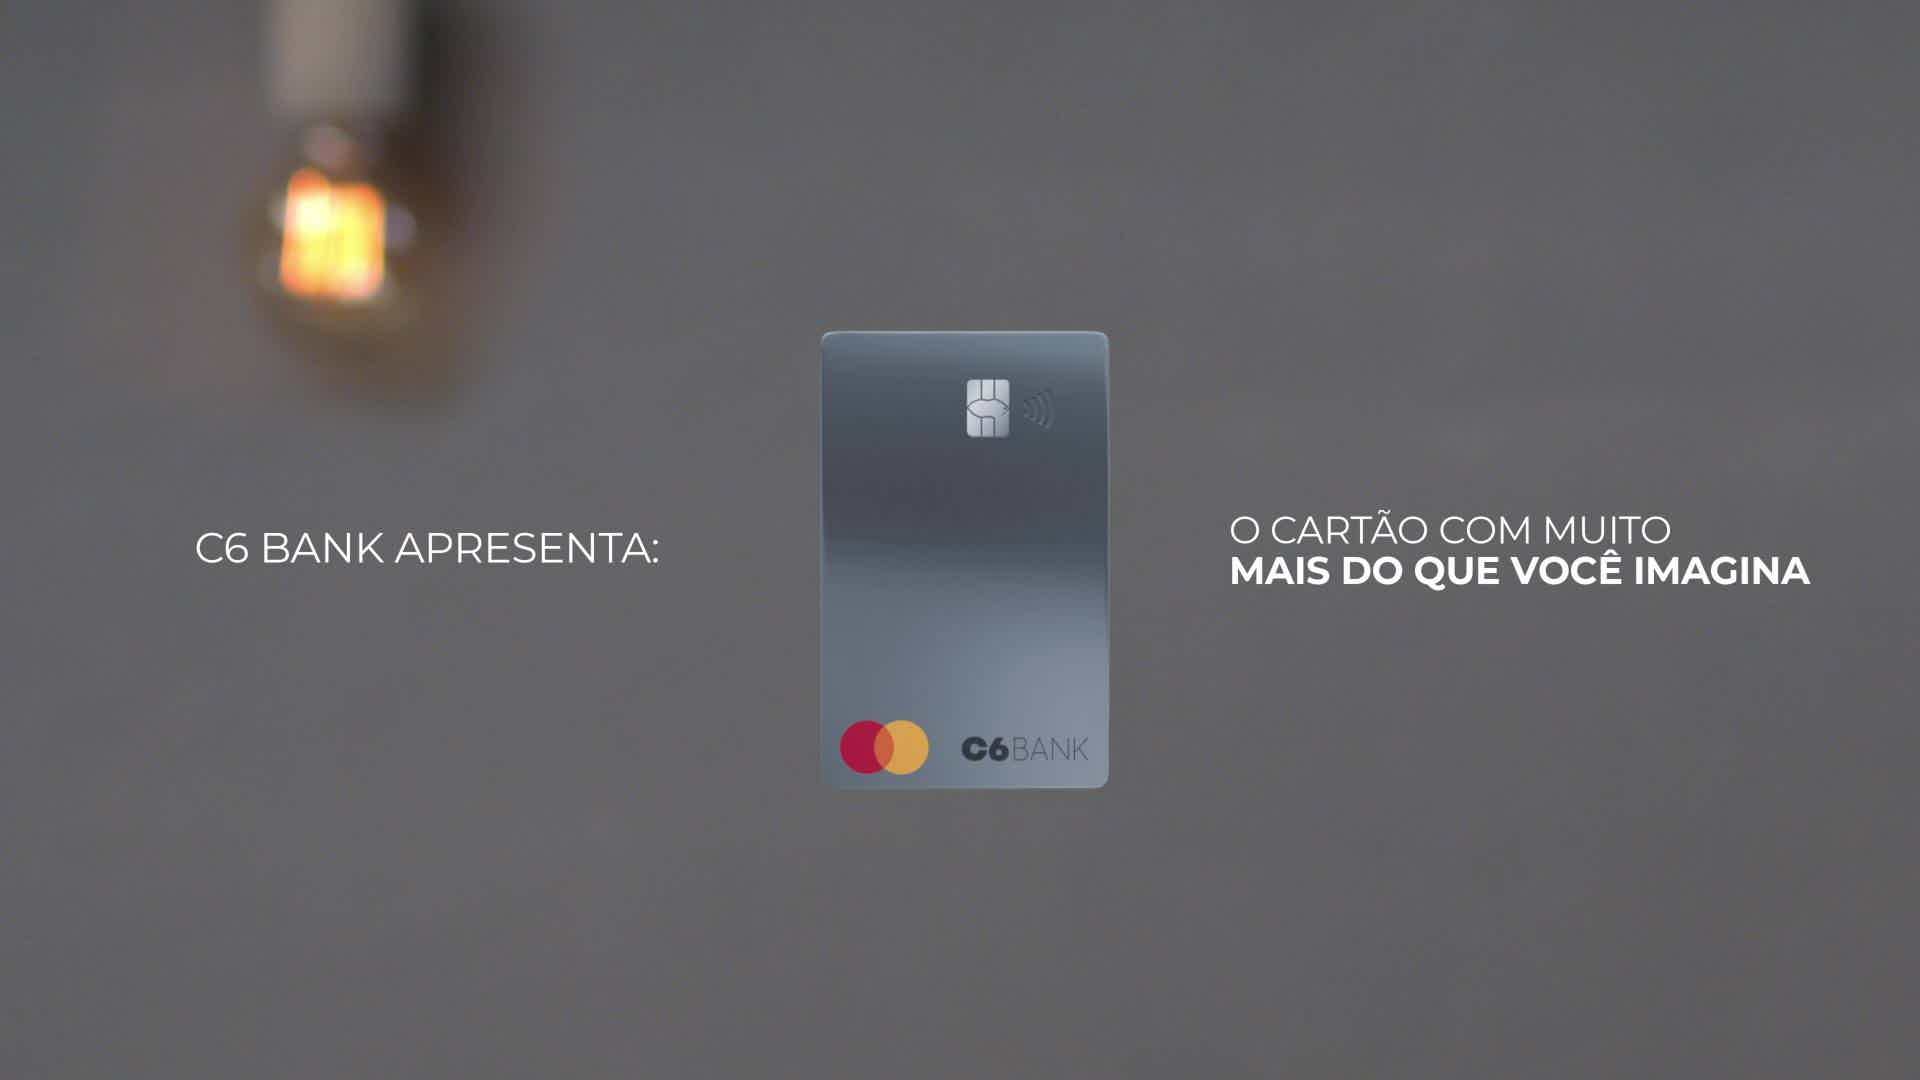 Então, conheça o cartão C6 Business. Fonte: C6 Facebook.